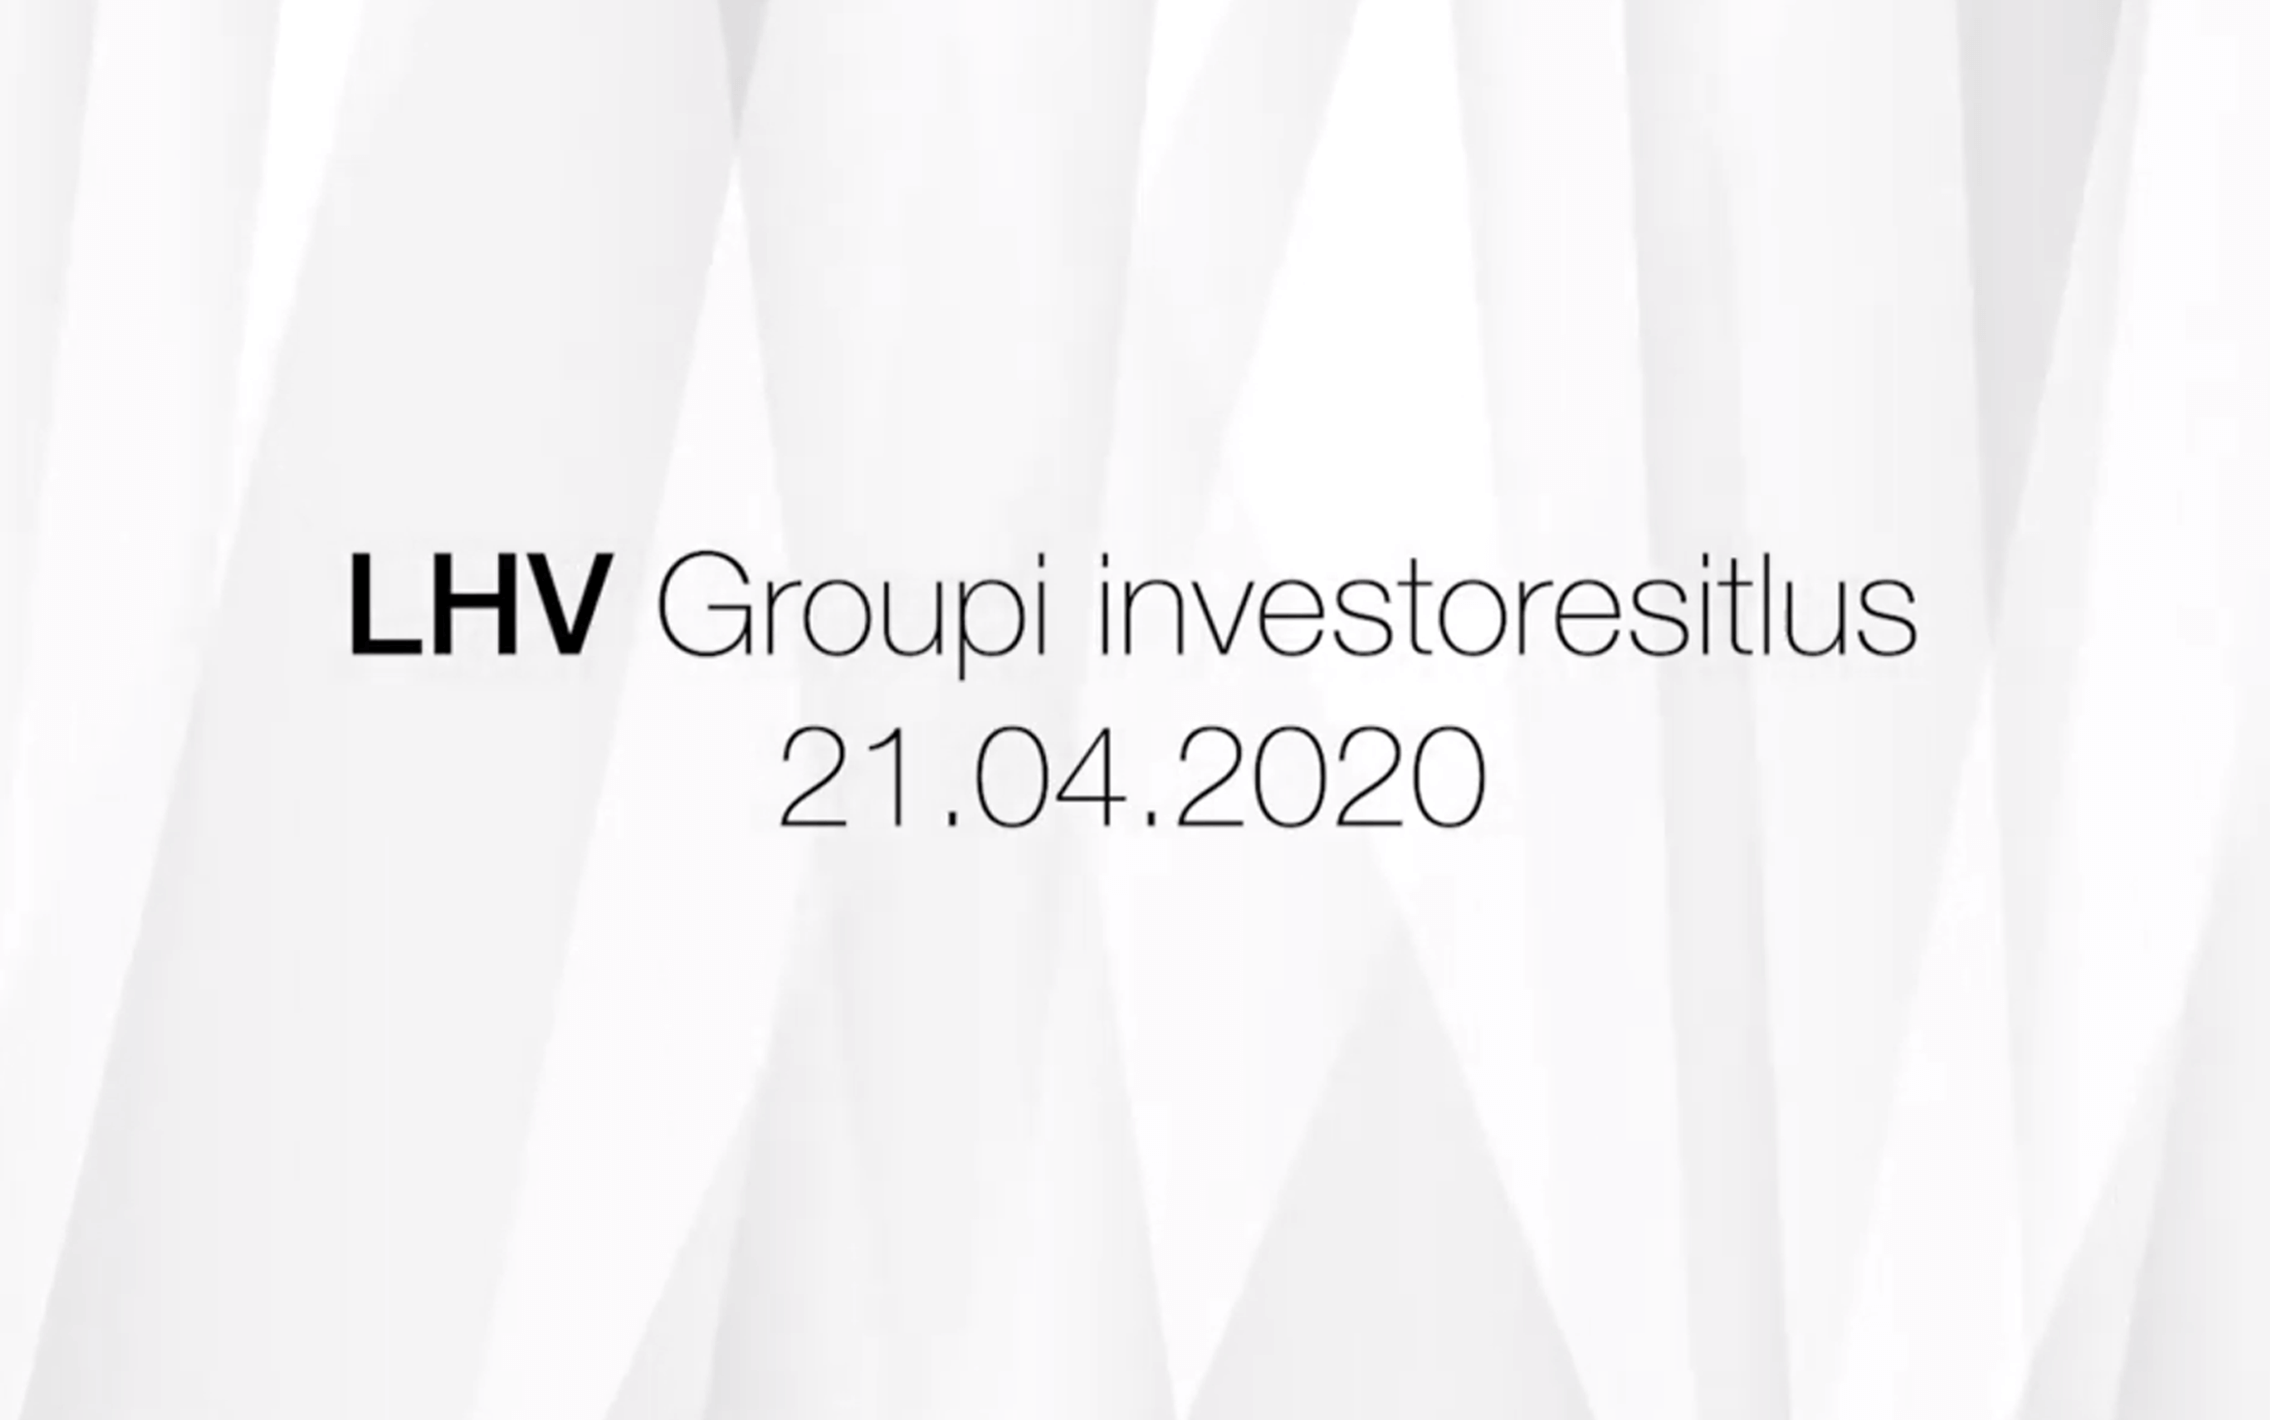 Investor Presentation of LHV Group 21.04.2020